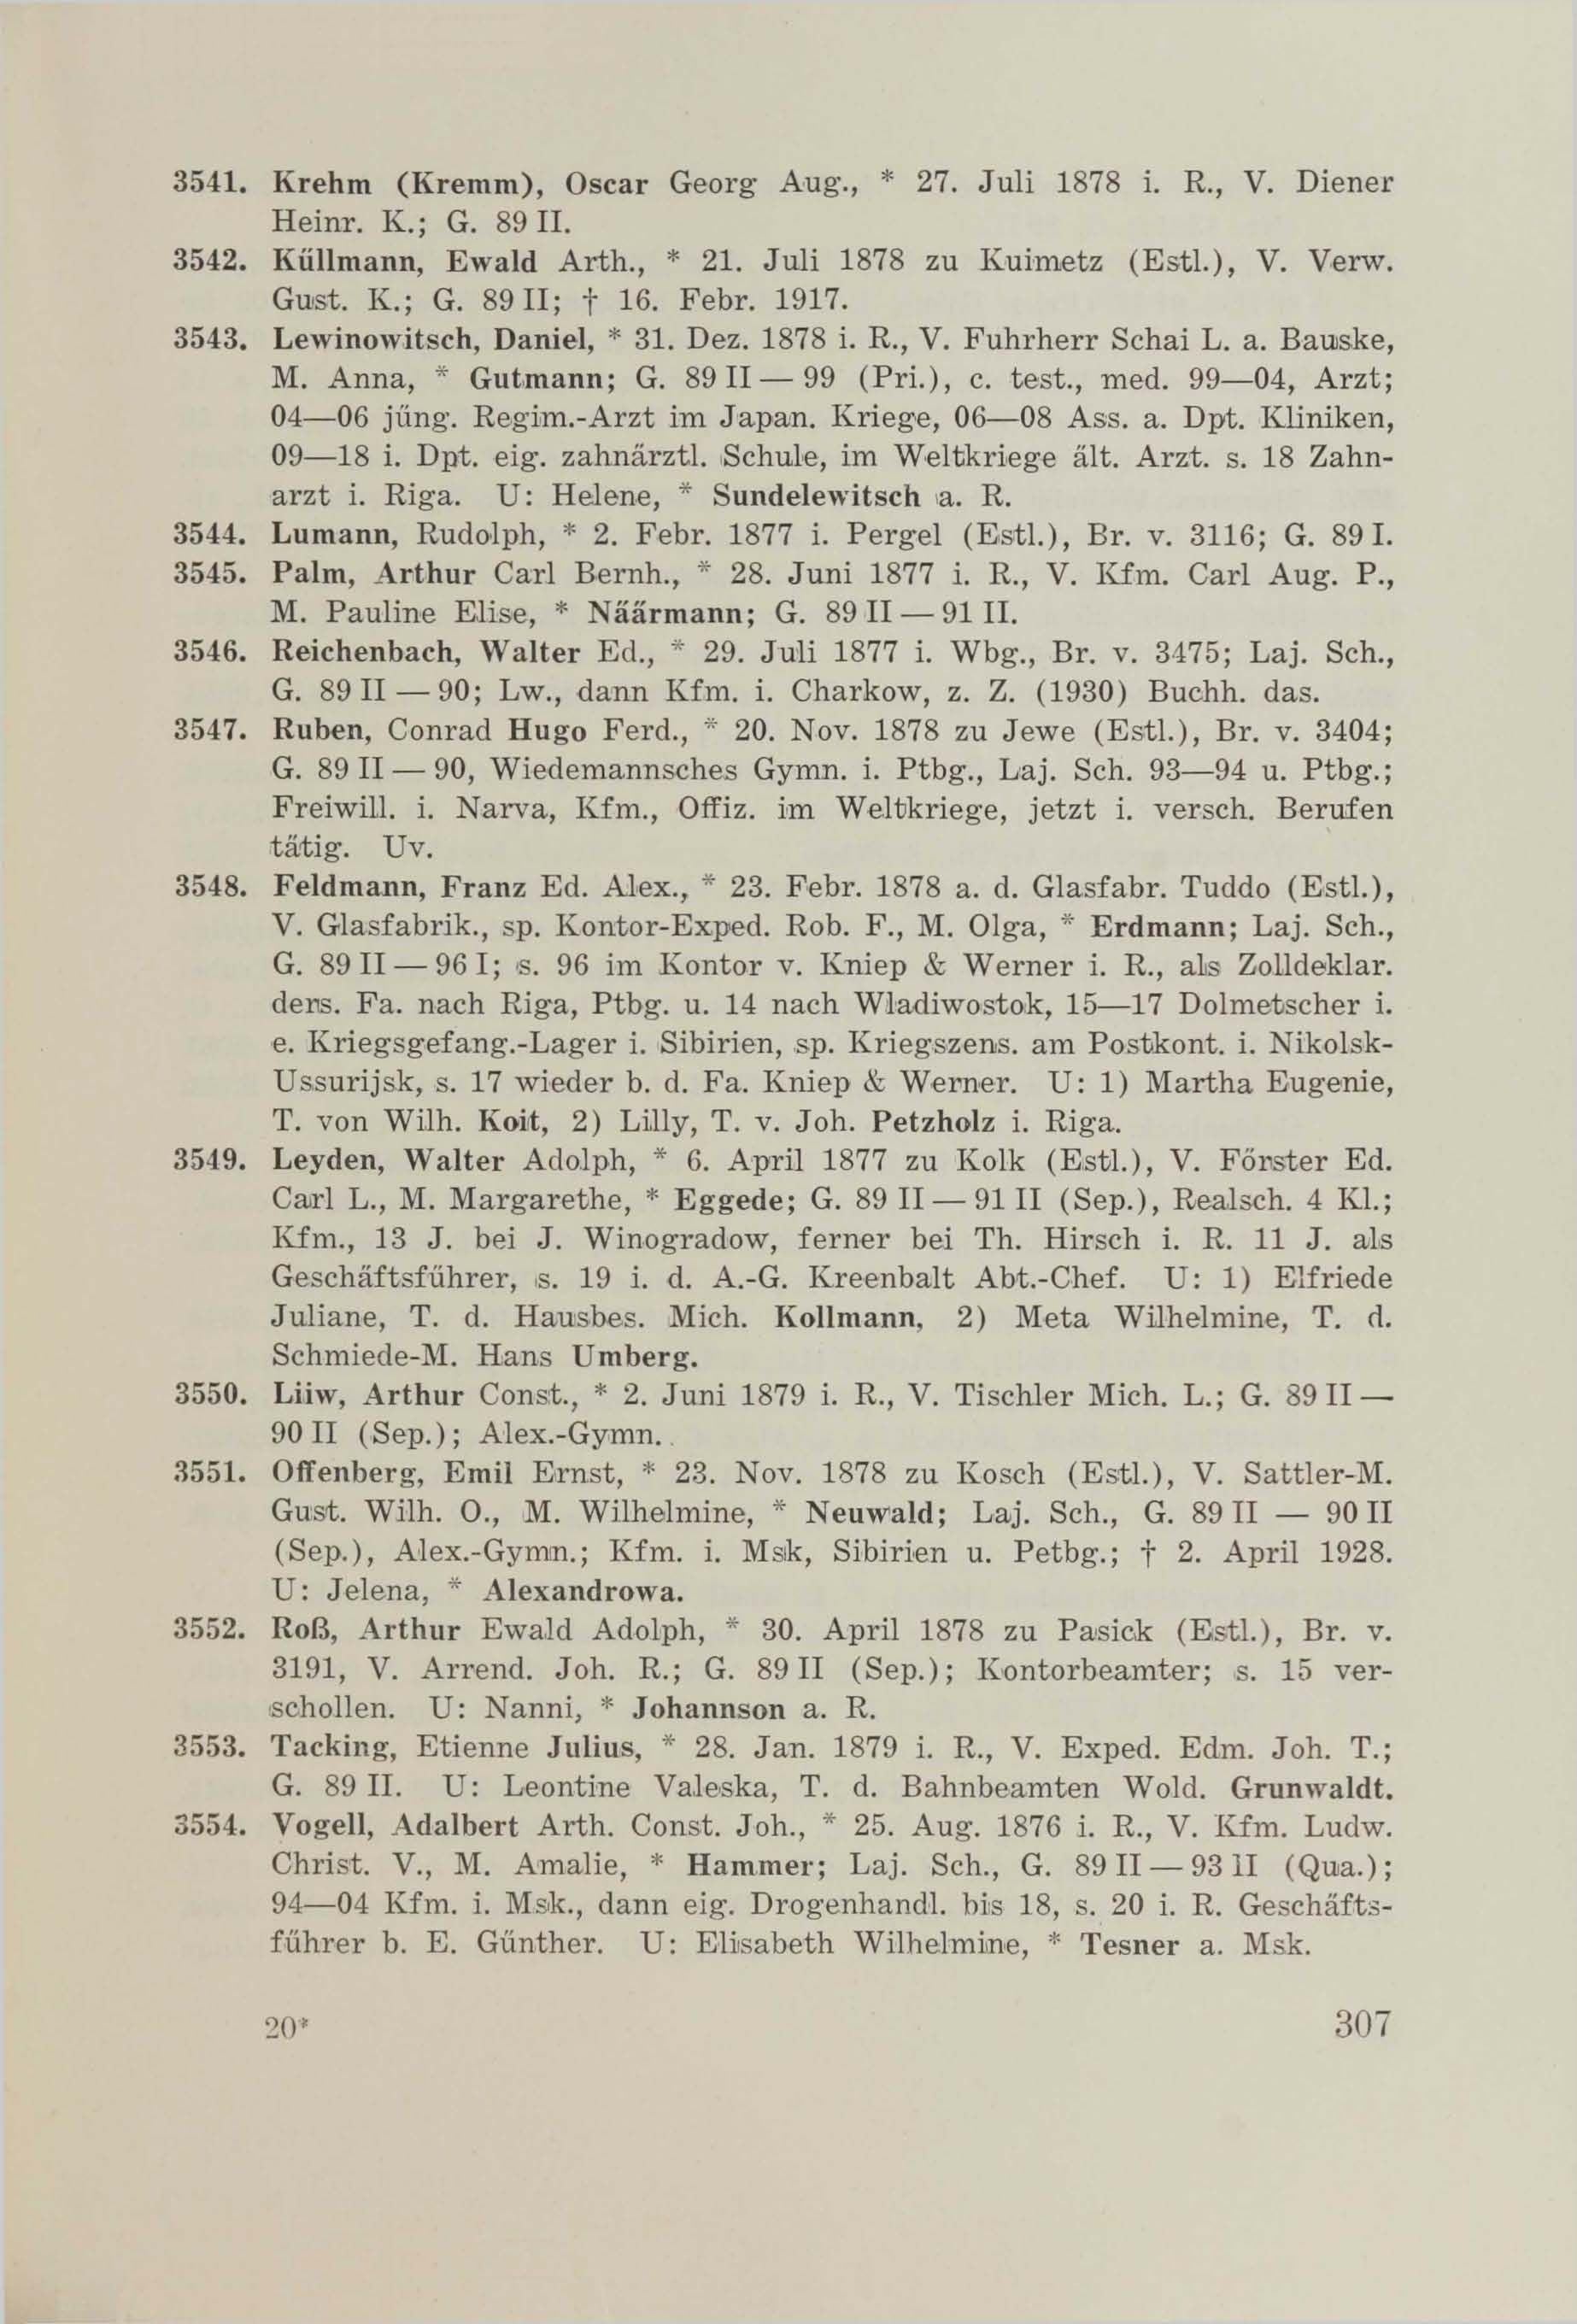 Schüler-Verzeichnis des Revalschen Gouvernements-Gymnasiums 1805–1890 (1931) | 317. (307) Haupttext